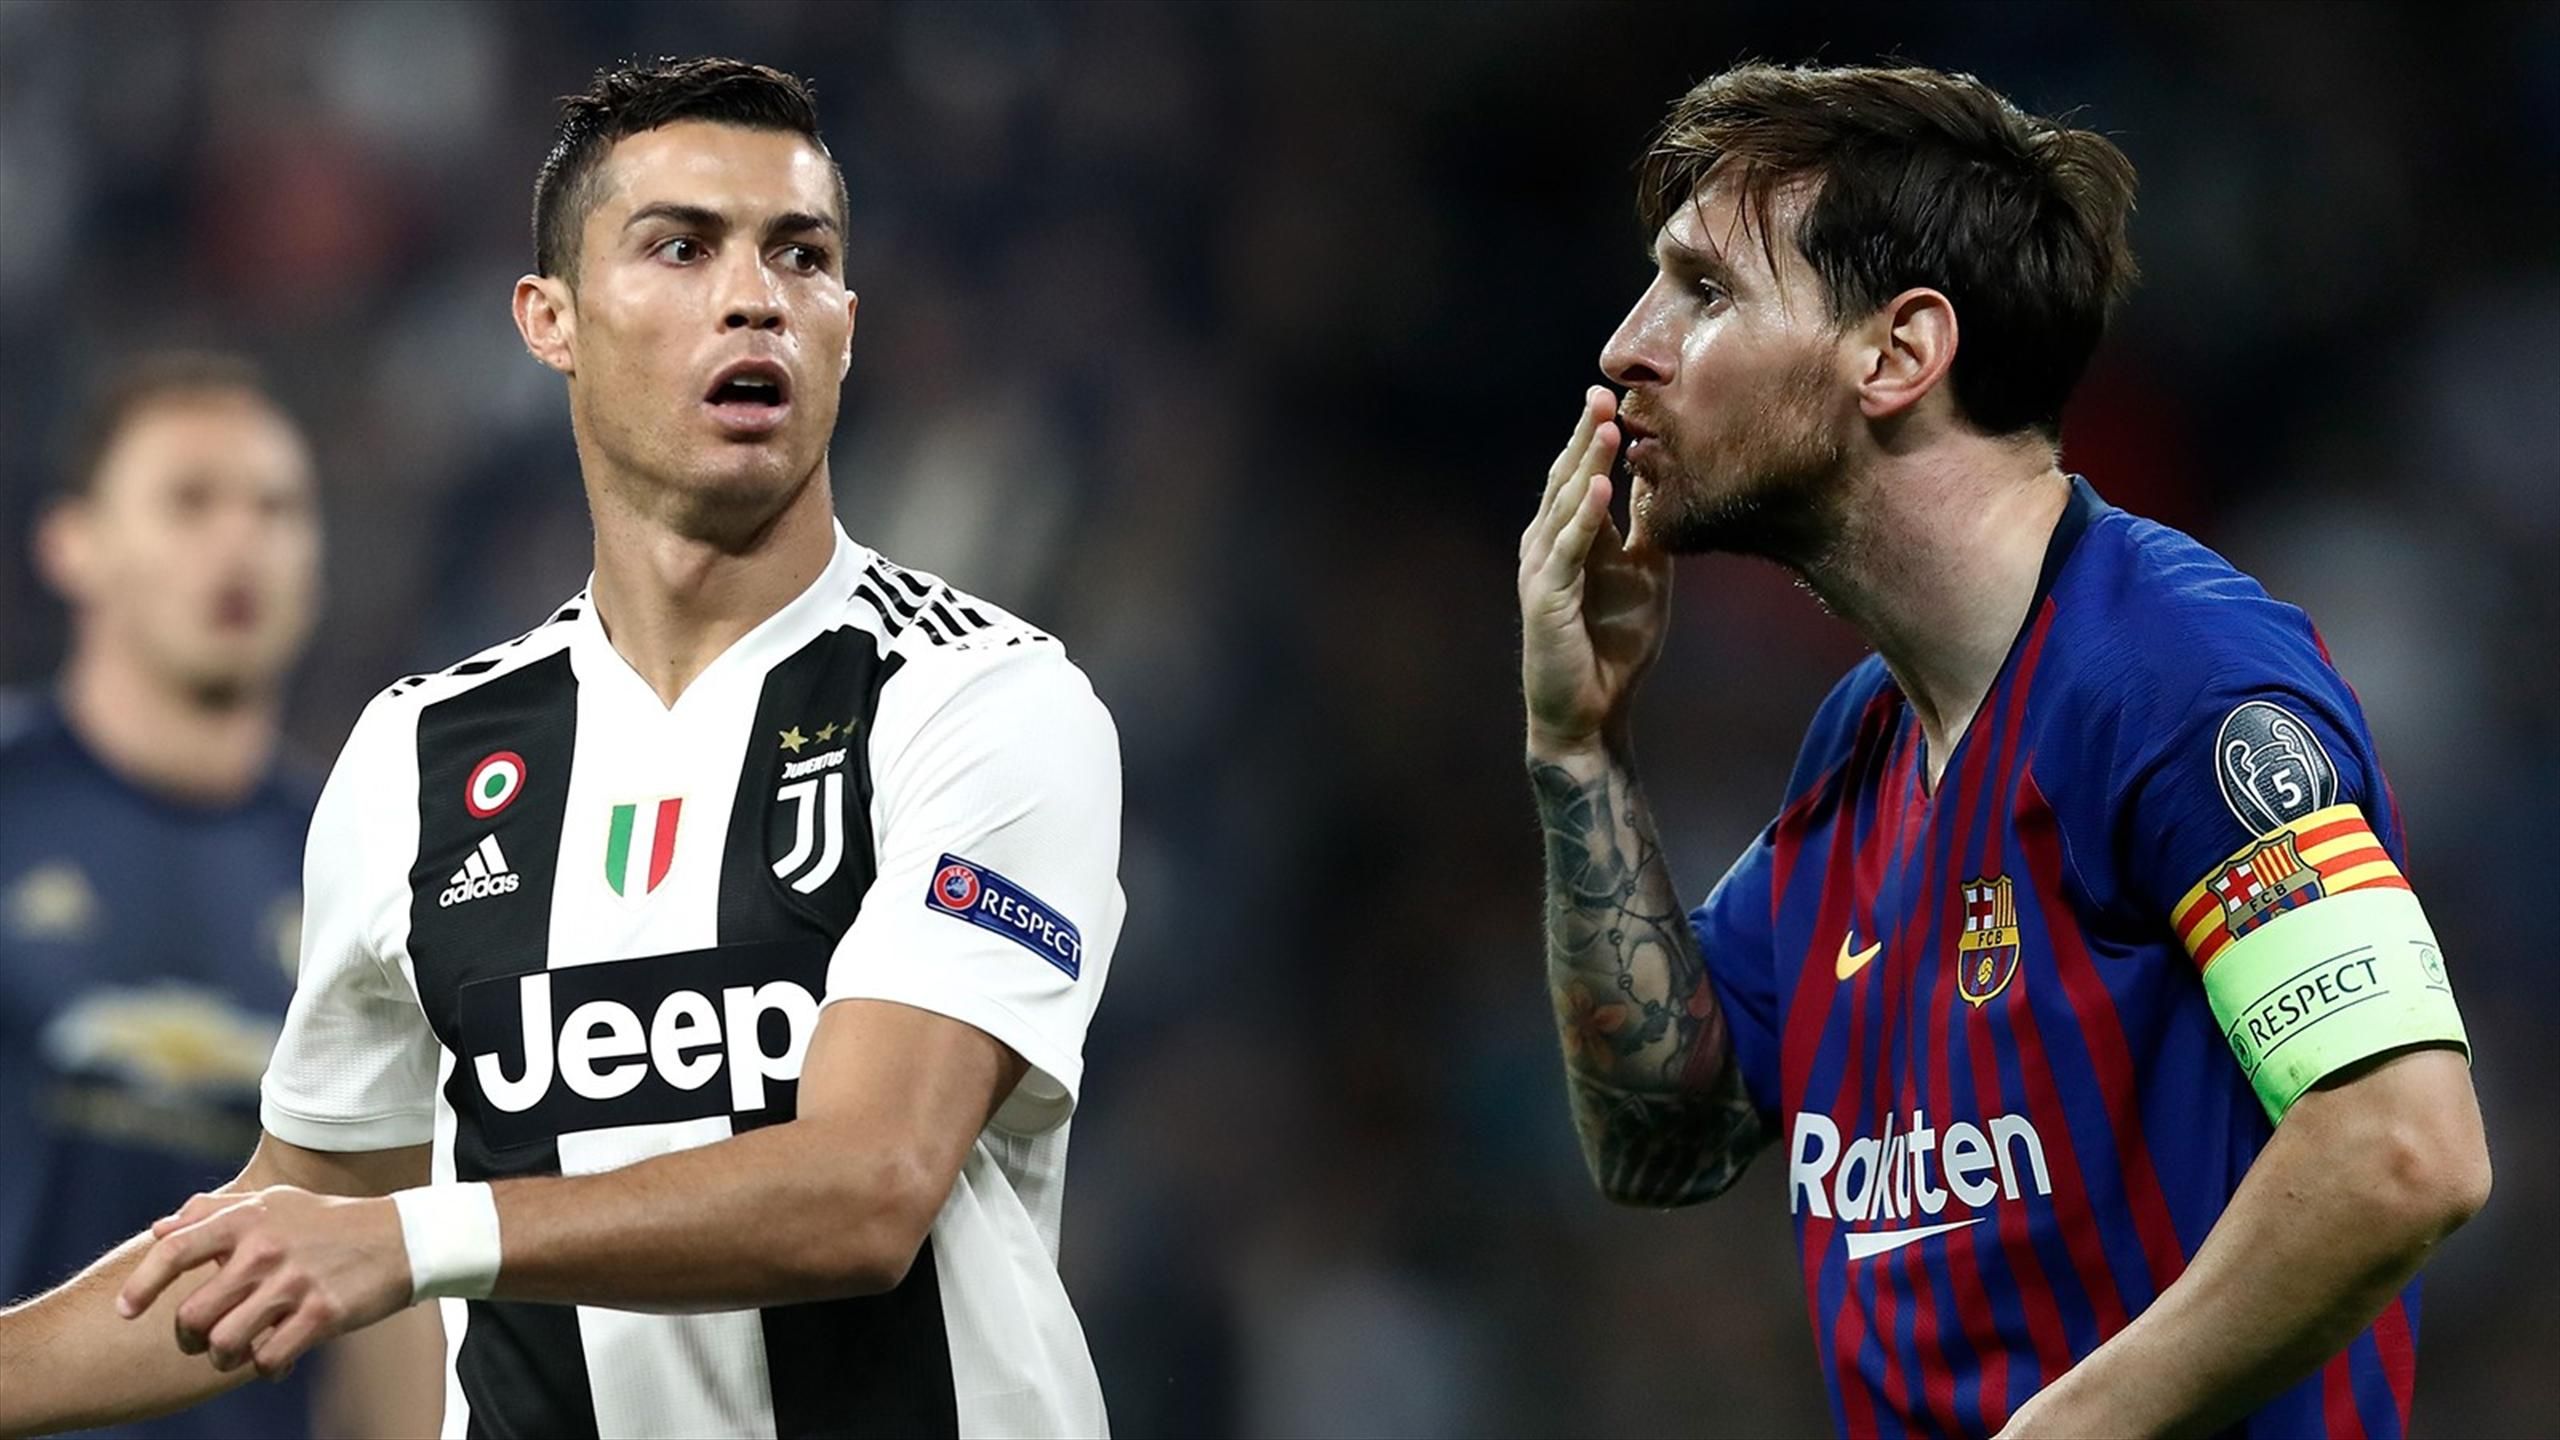 Calciomercato: Messi e Ronaldo finalmente insieme? All'estero ne sono  sicuri - SuperNews